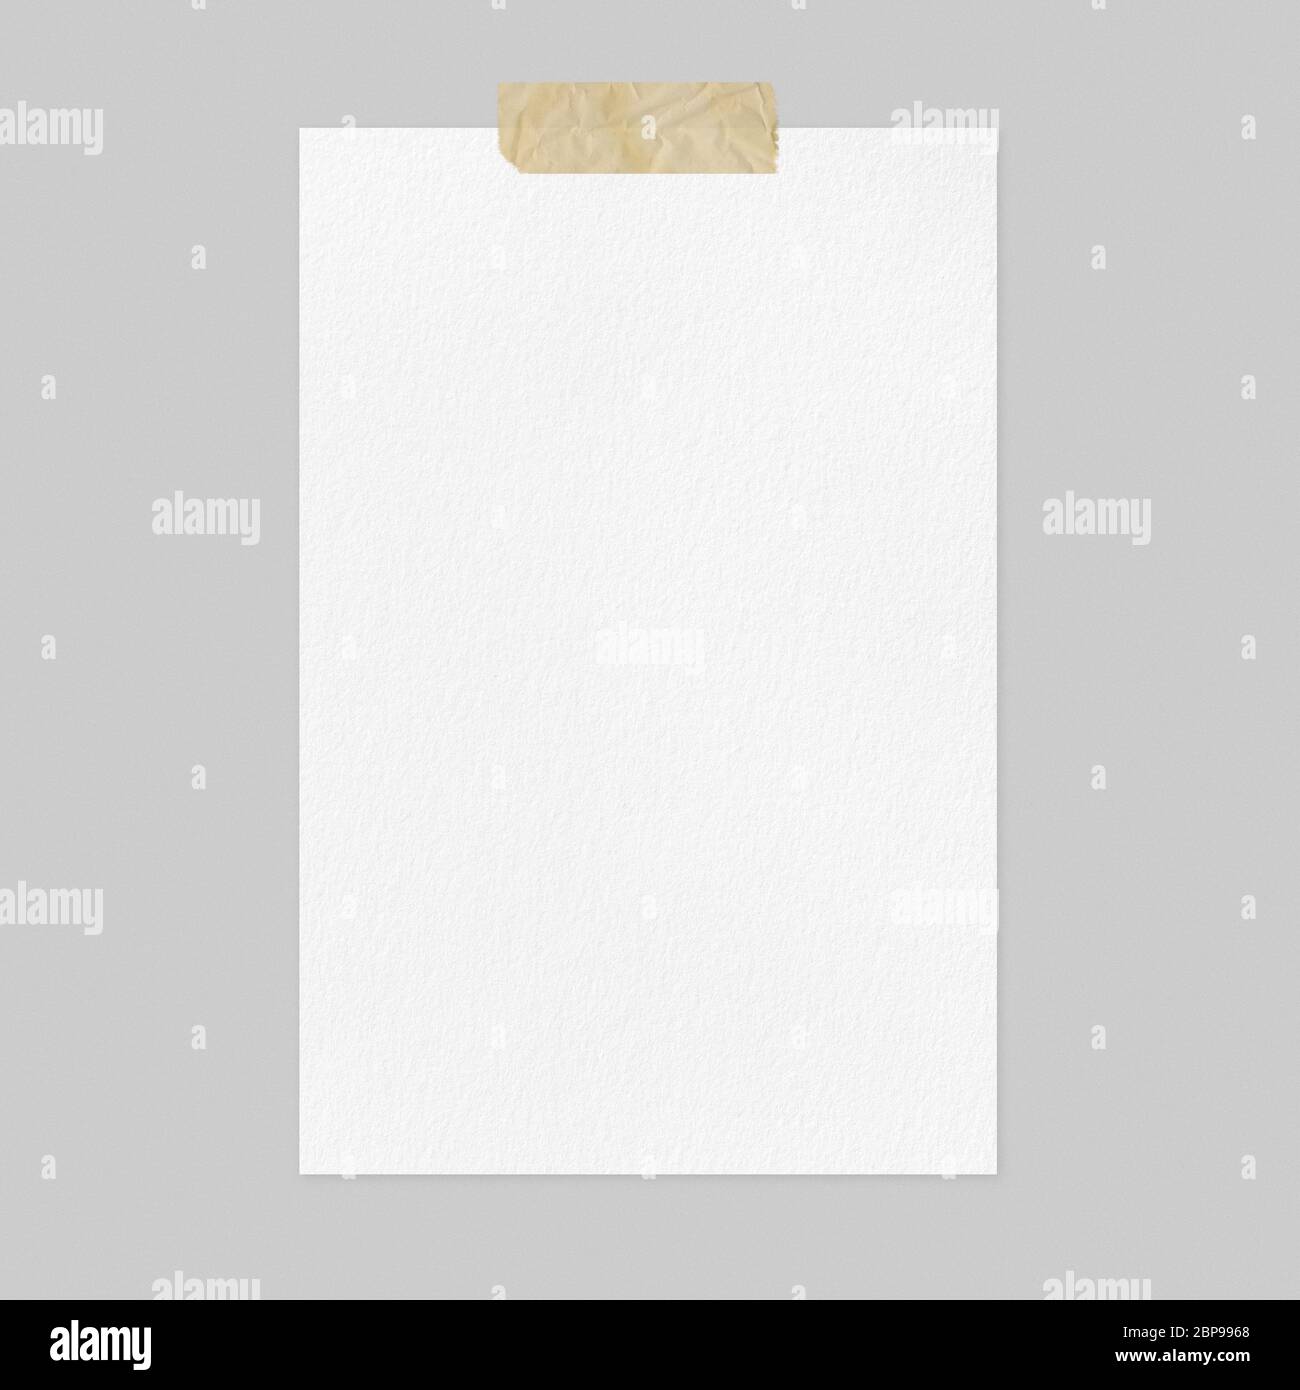 Blank foglio di carta bianco mockup su sfondo grigio chiaro, vista anteriore a4 poster mockup con nastro adesivo e spazio di copia Foto Stock